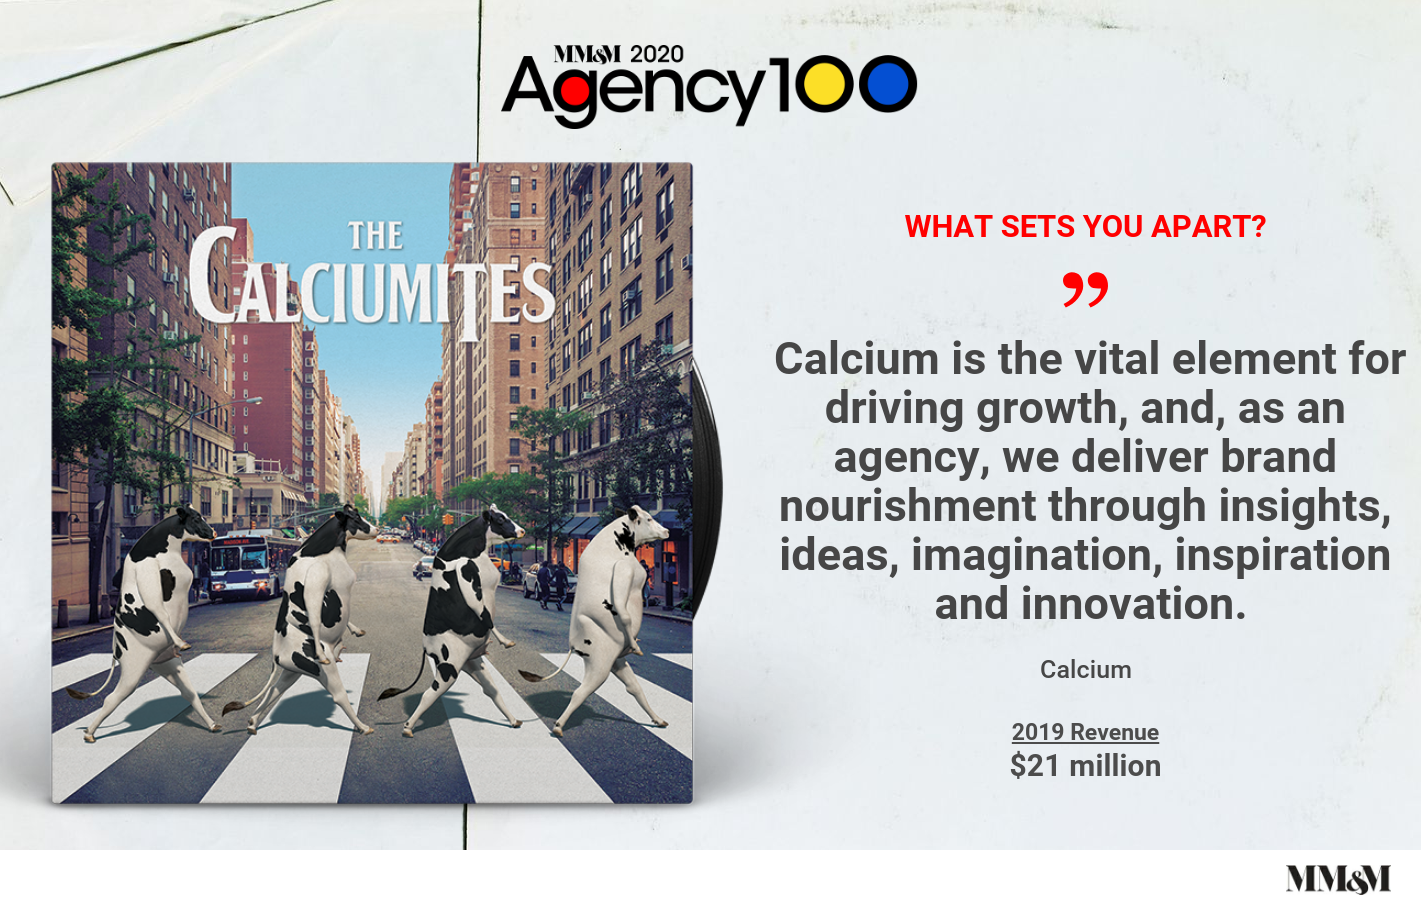 Agency 100 2020: Calcium